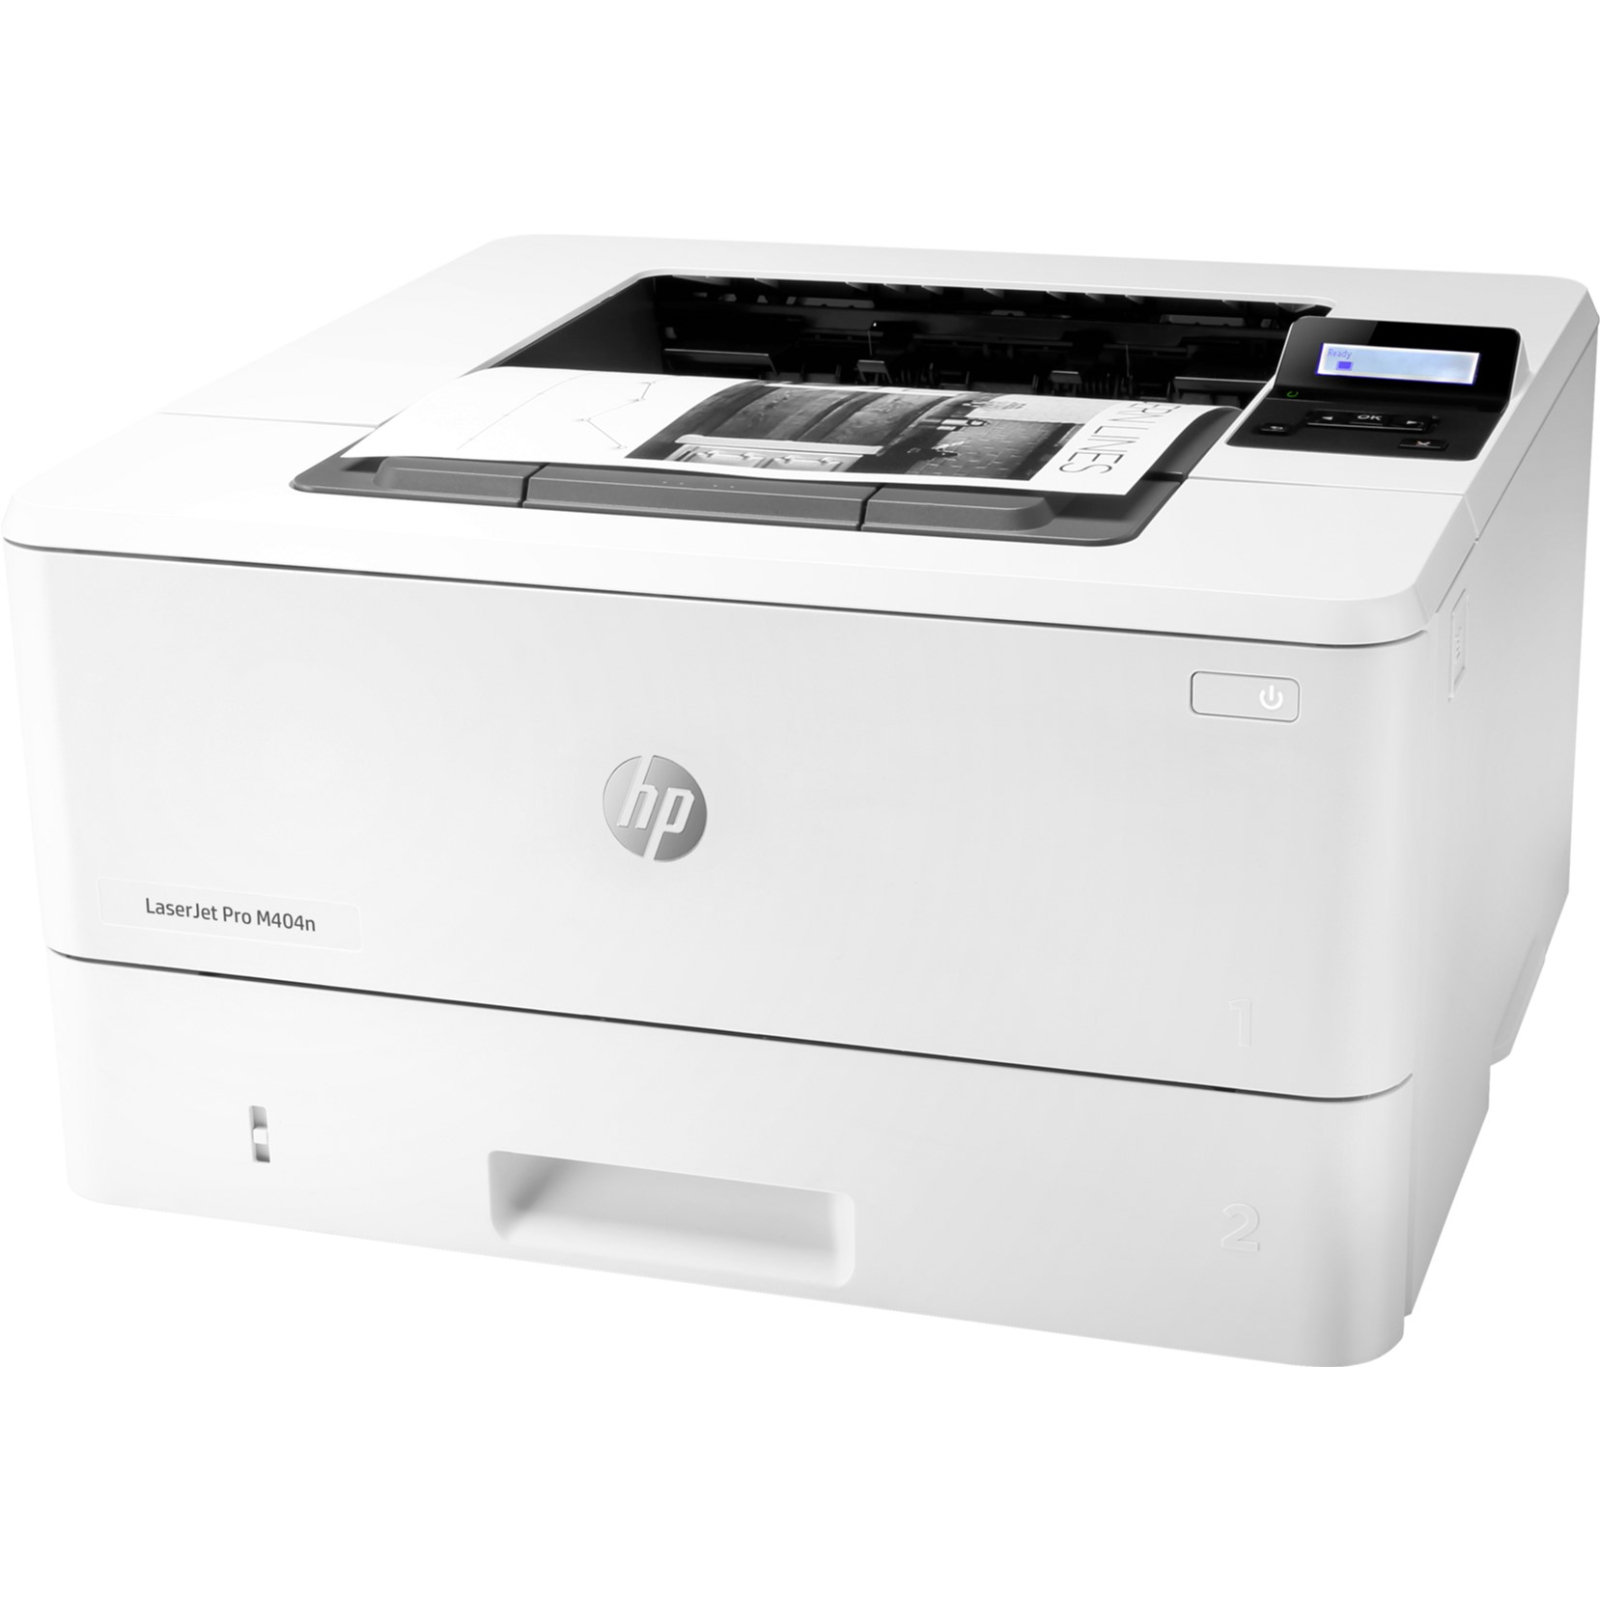 Лазерный принтер HP LaserJet Pro M404n (W1A52A) изображение 3